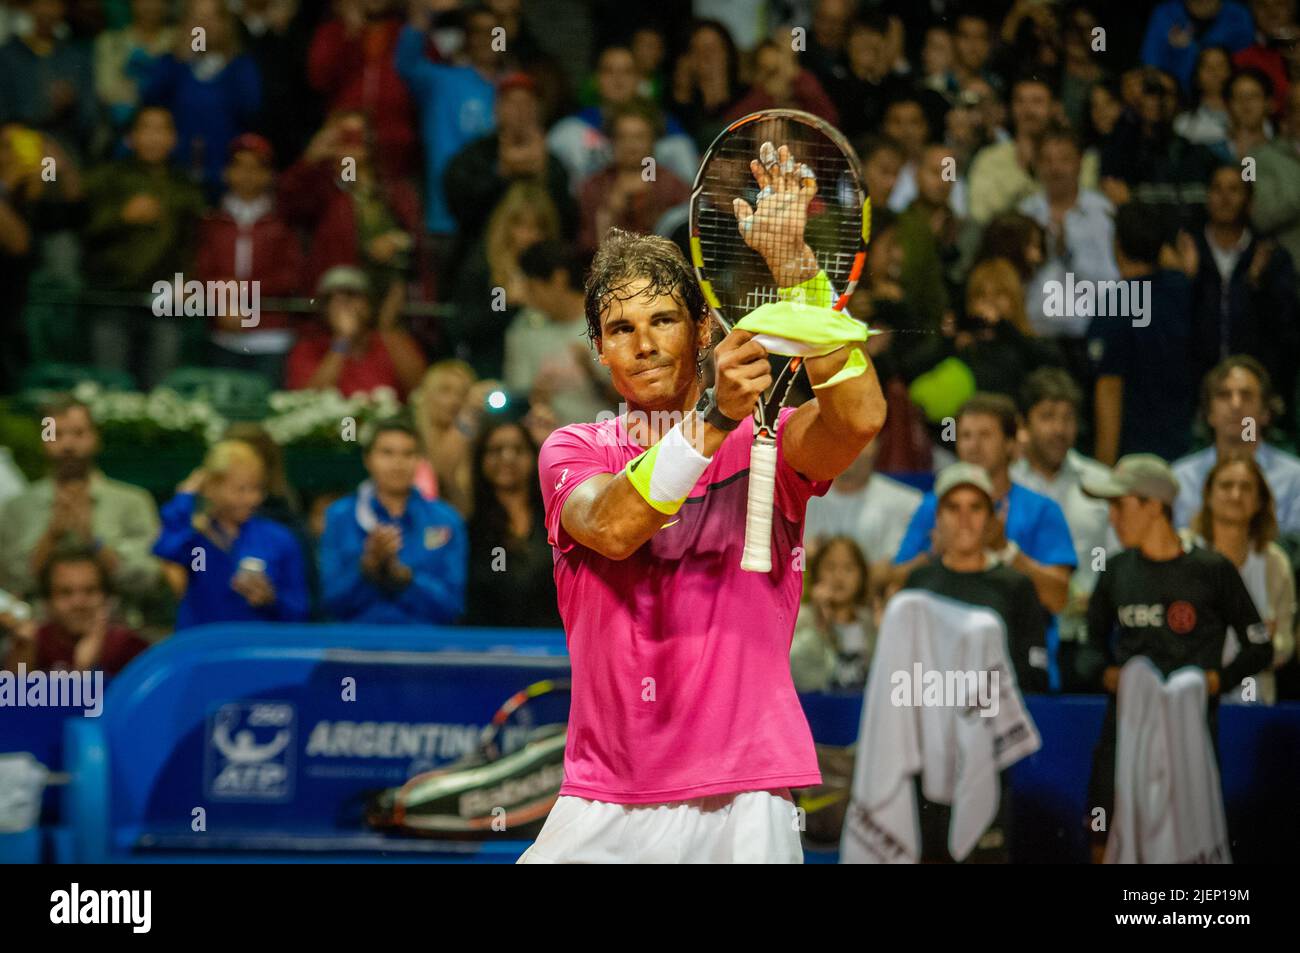 Rafael Nadal, joueur de tennis professionnel célèbre un nouveau titre ATP 250 à Buenos Aires. Banque D'Images